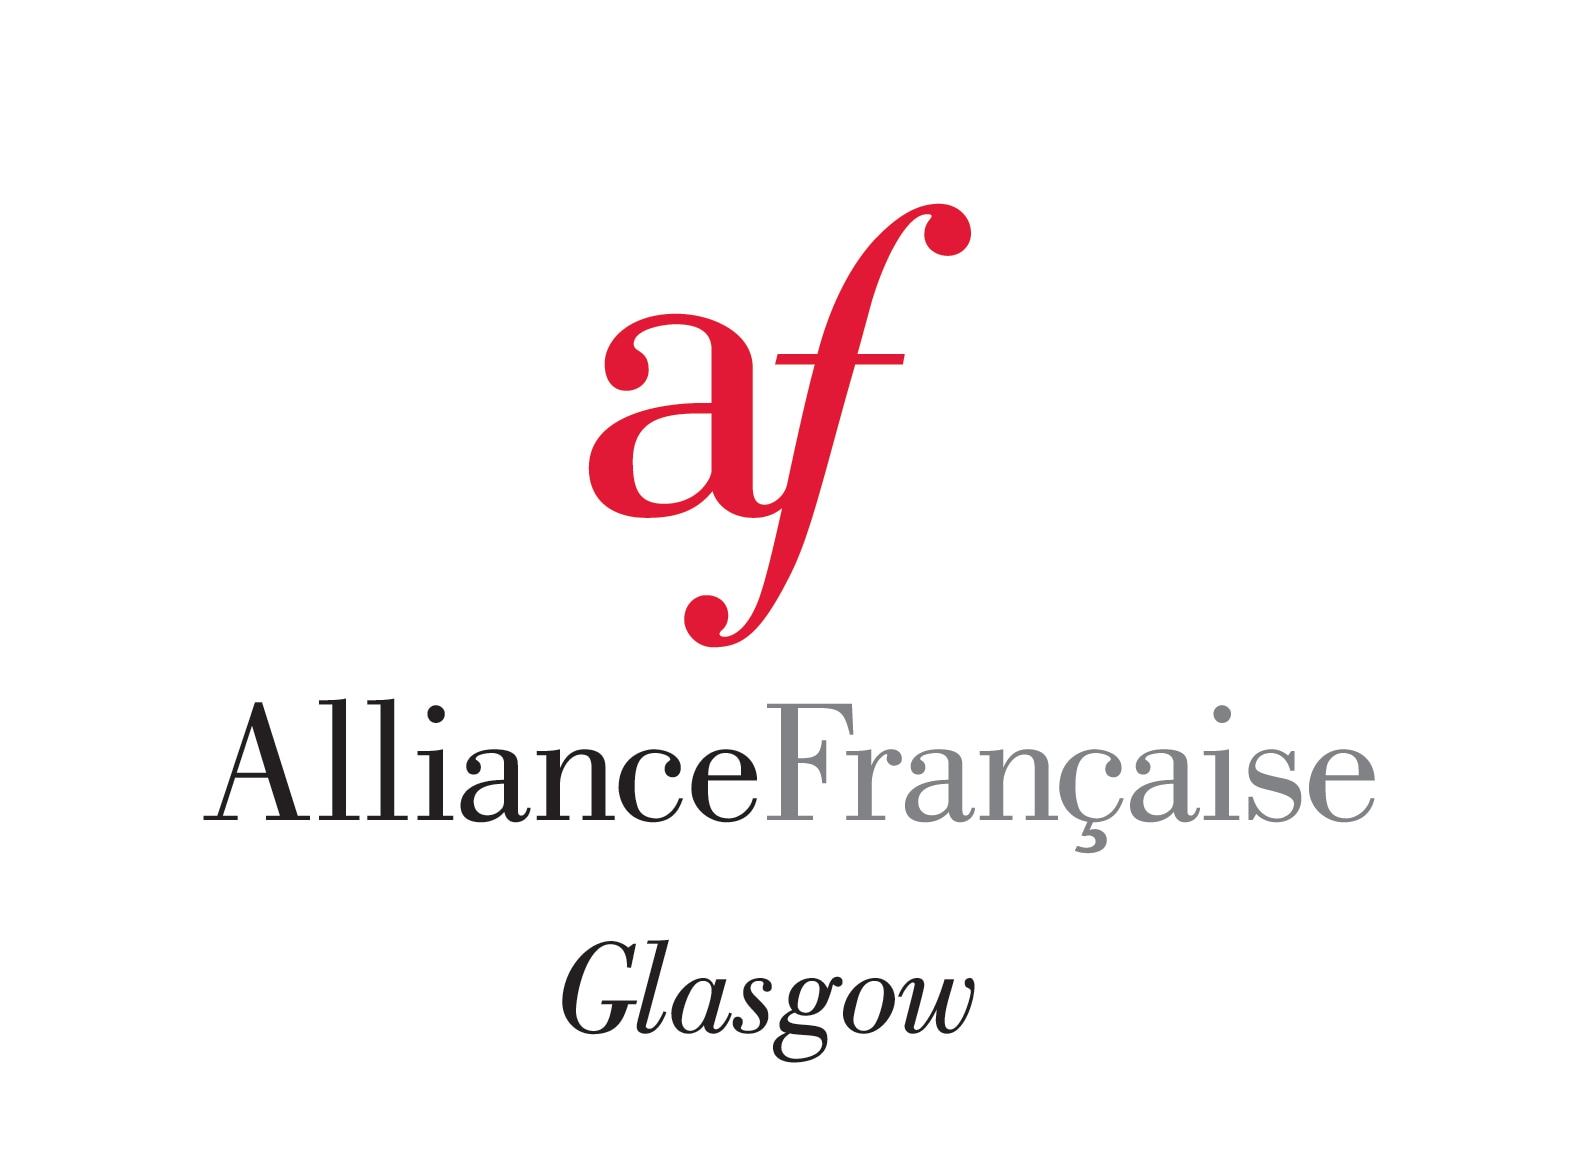 Alliance Francaise Glasgow